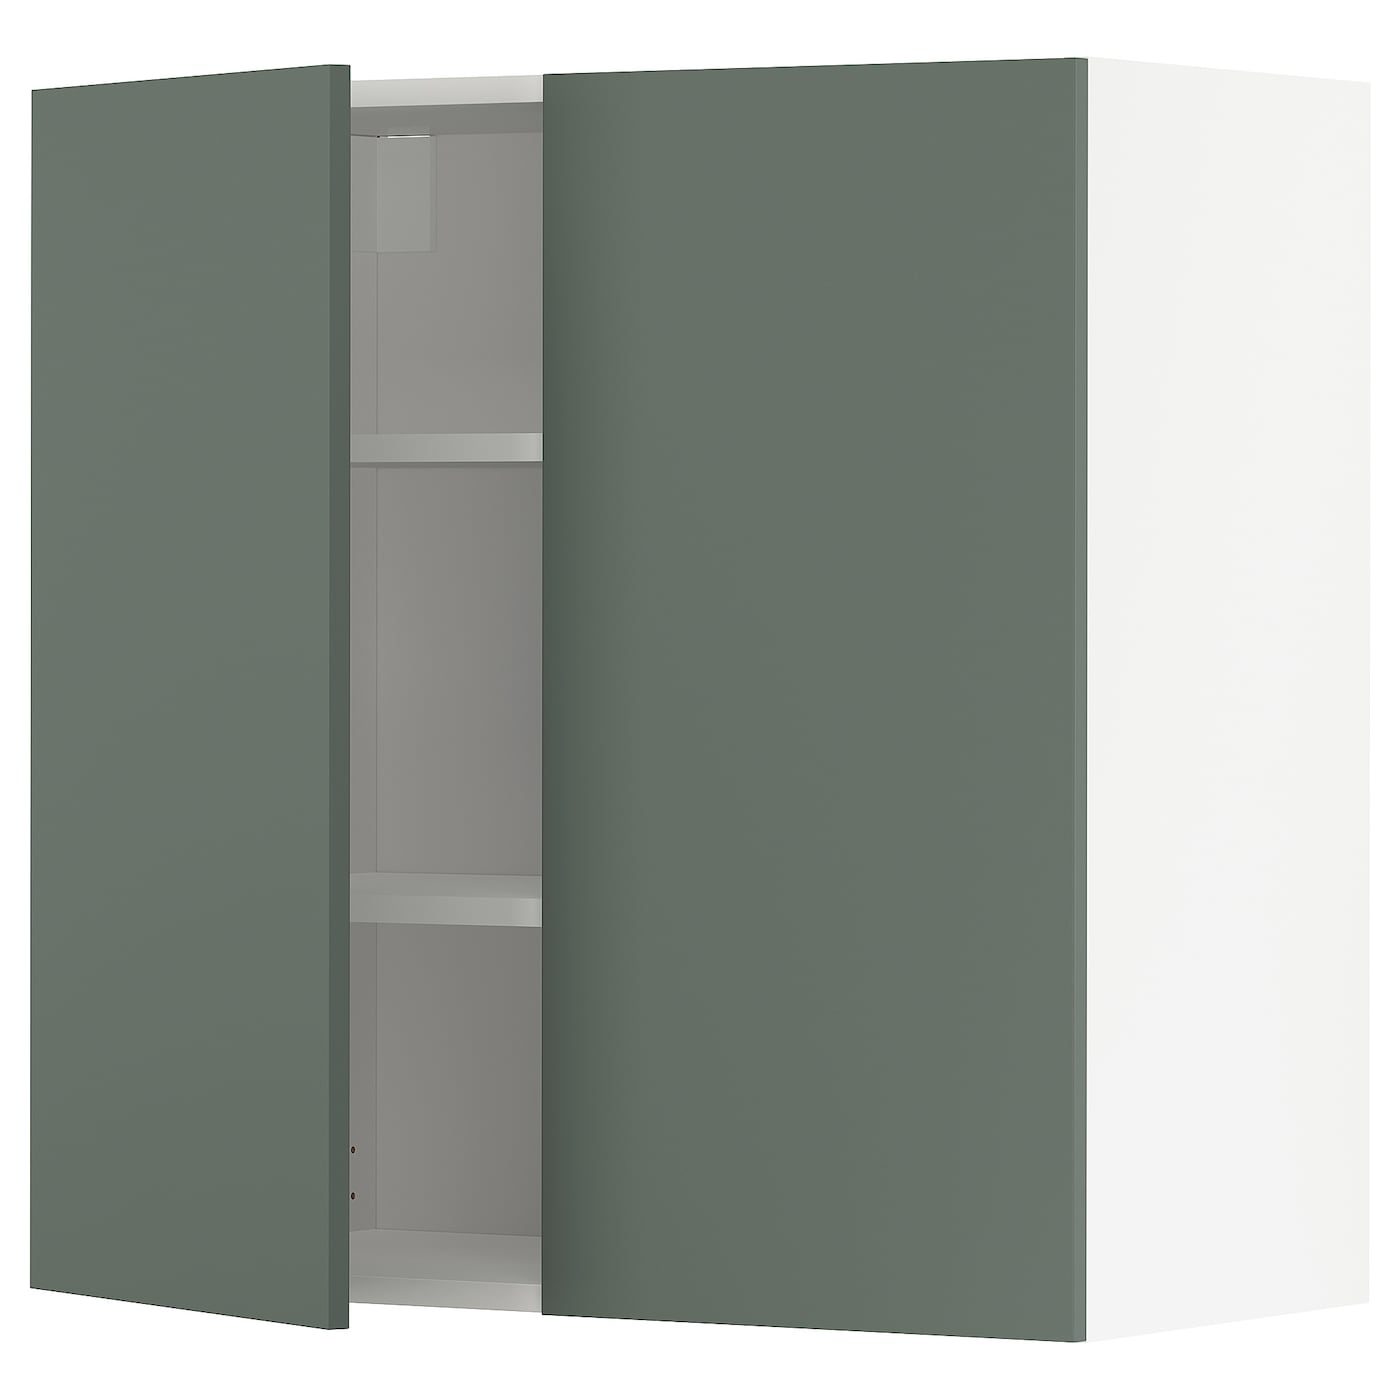 Навесной шкаф с полкой - METOD IKEA/ МЕТОД ИКЕА, 80х80 см,  белый/темно-зеленый